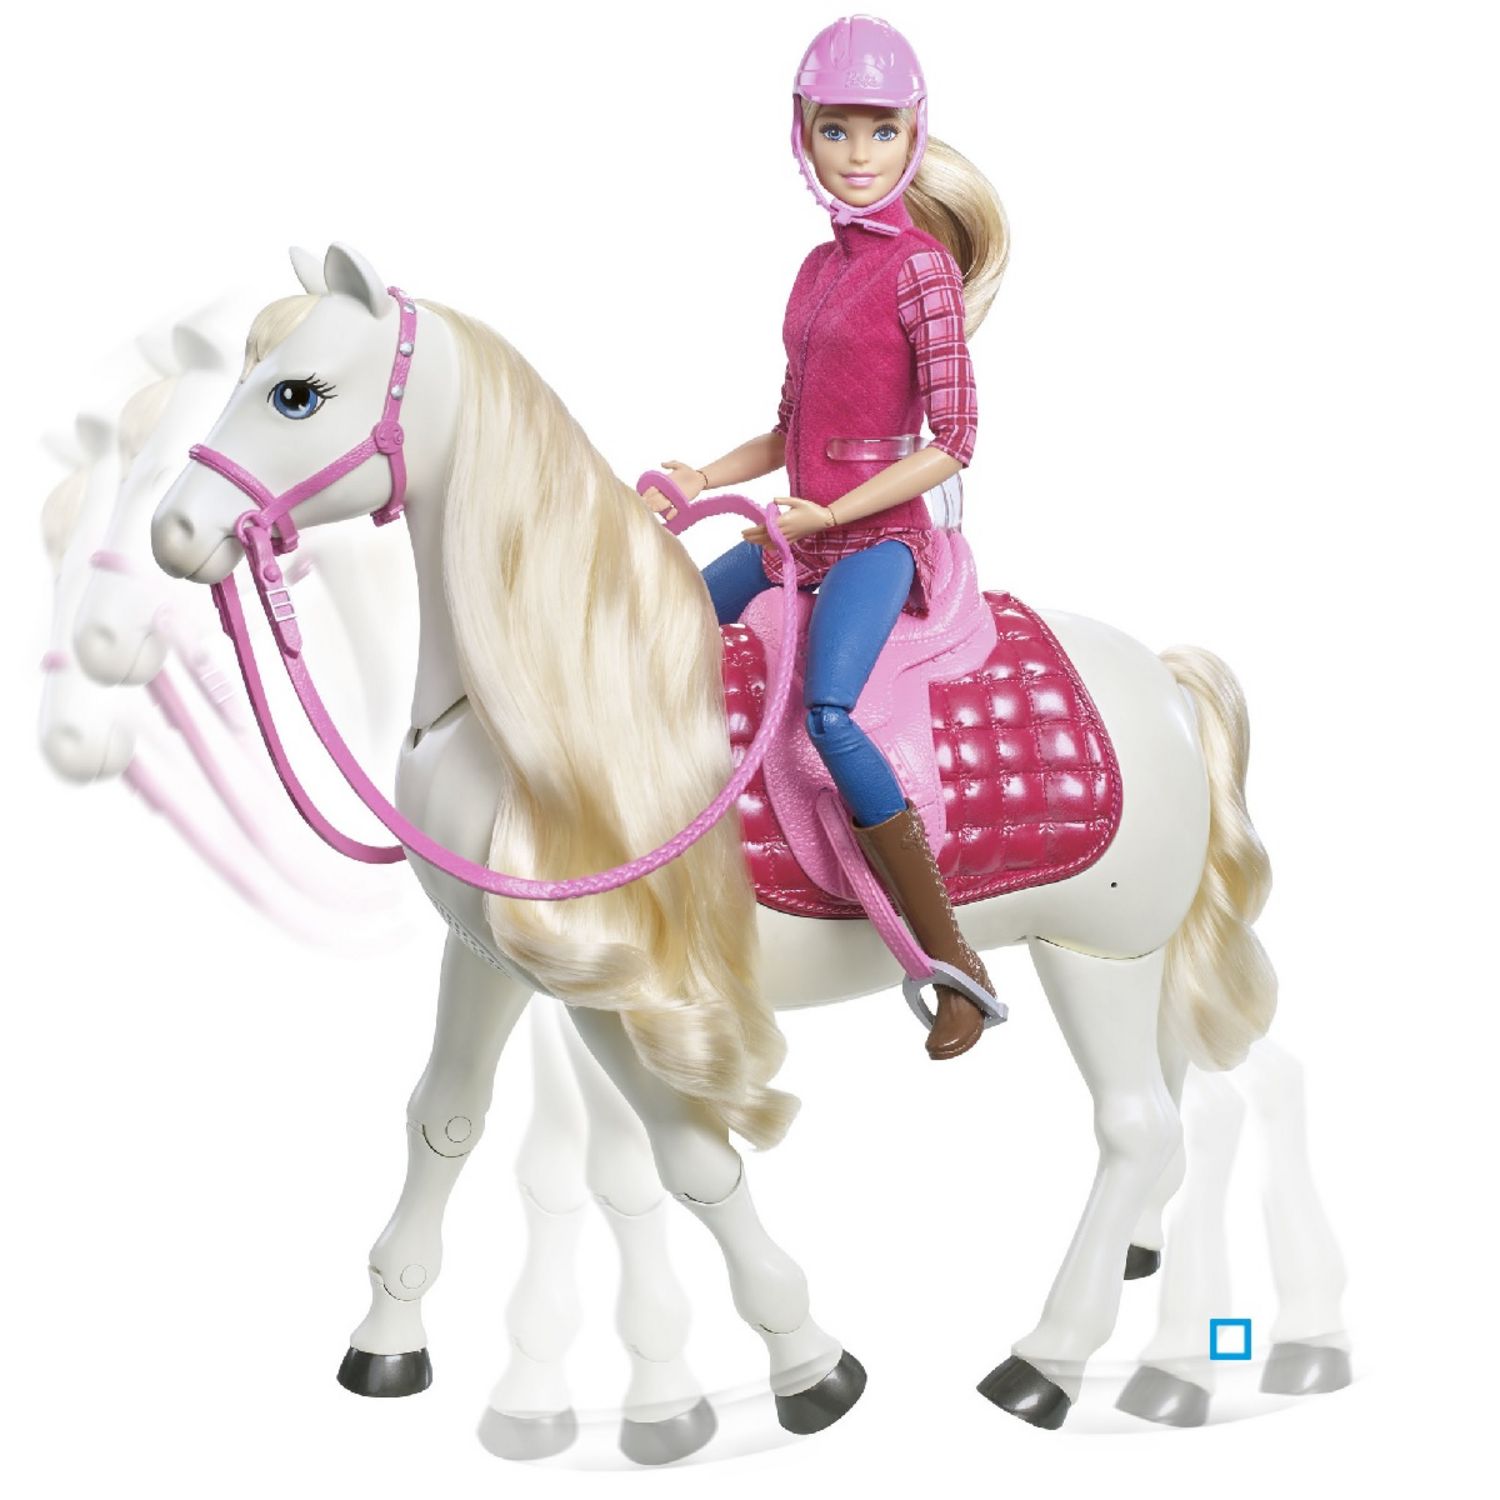 ensemble de jeu de cheval - cheval de jeu - cheval Barbie